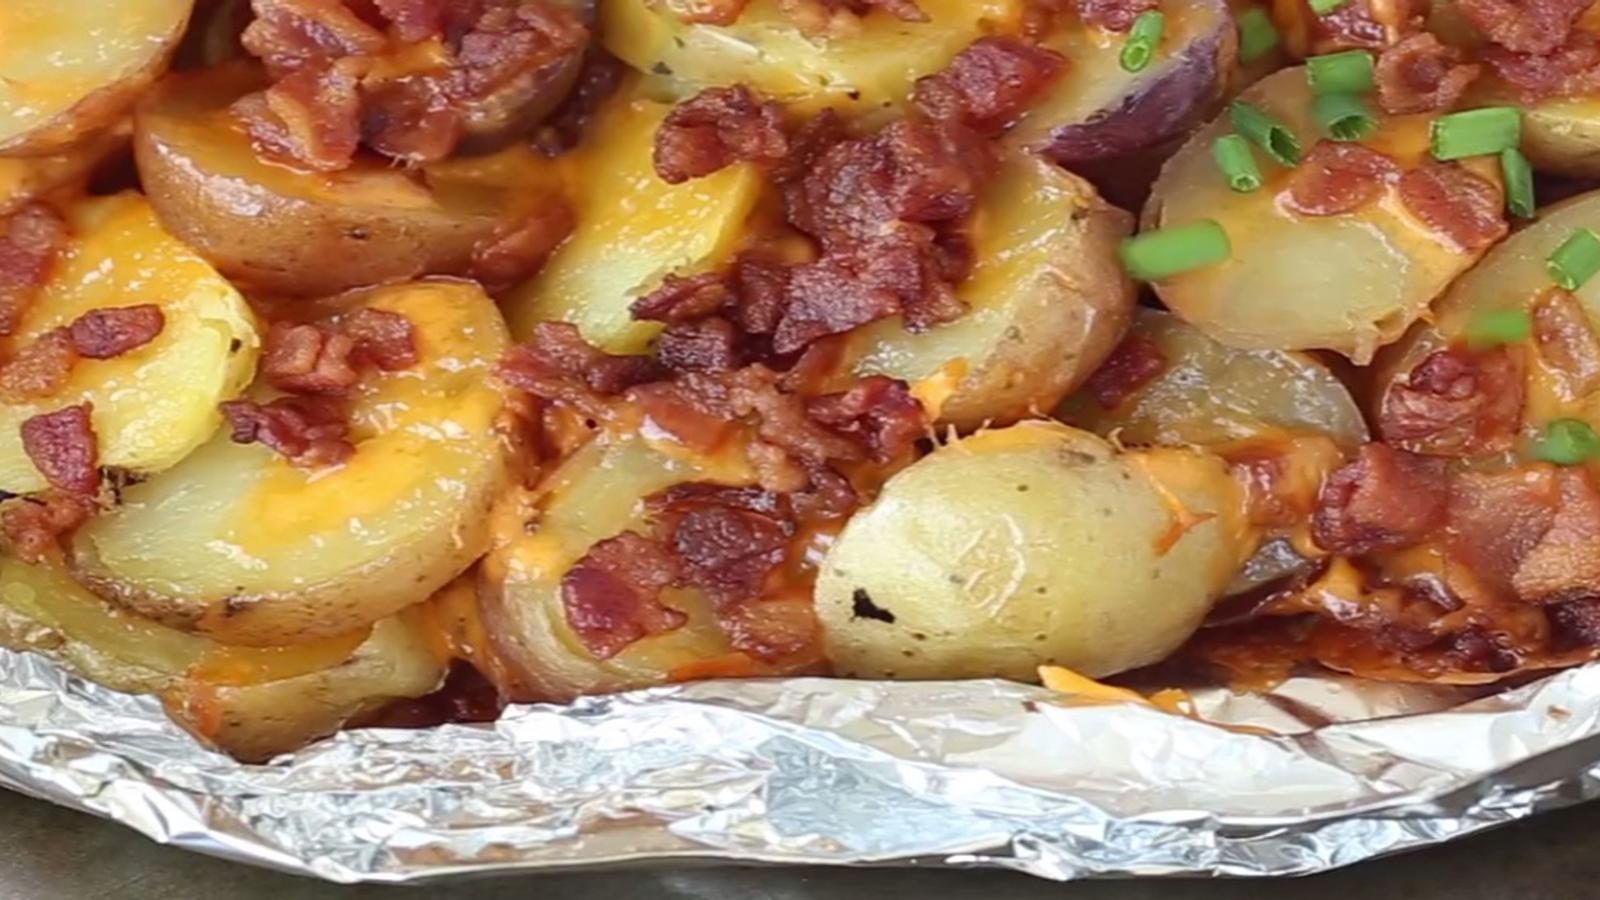 Des patates sur le barbecue prêtes en 15 minutes? Avec du bacon et du fromage en plus... On veut la recette